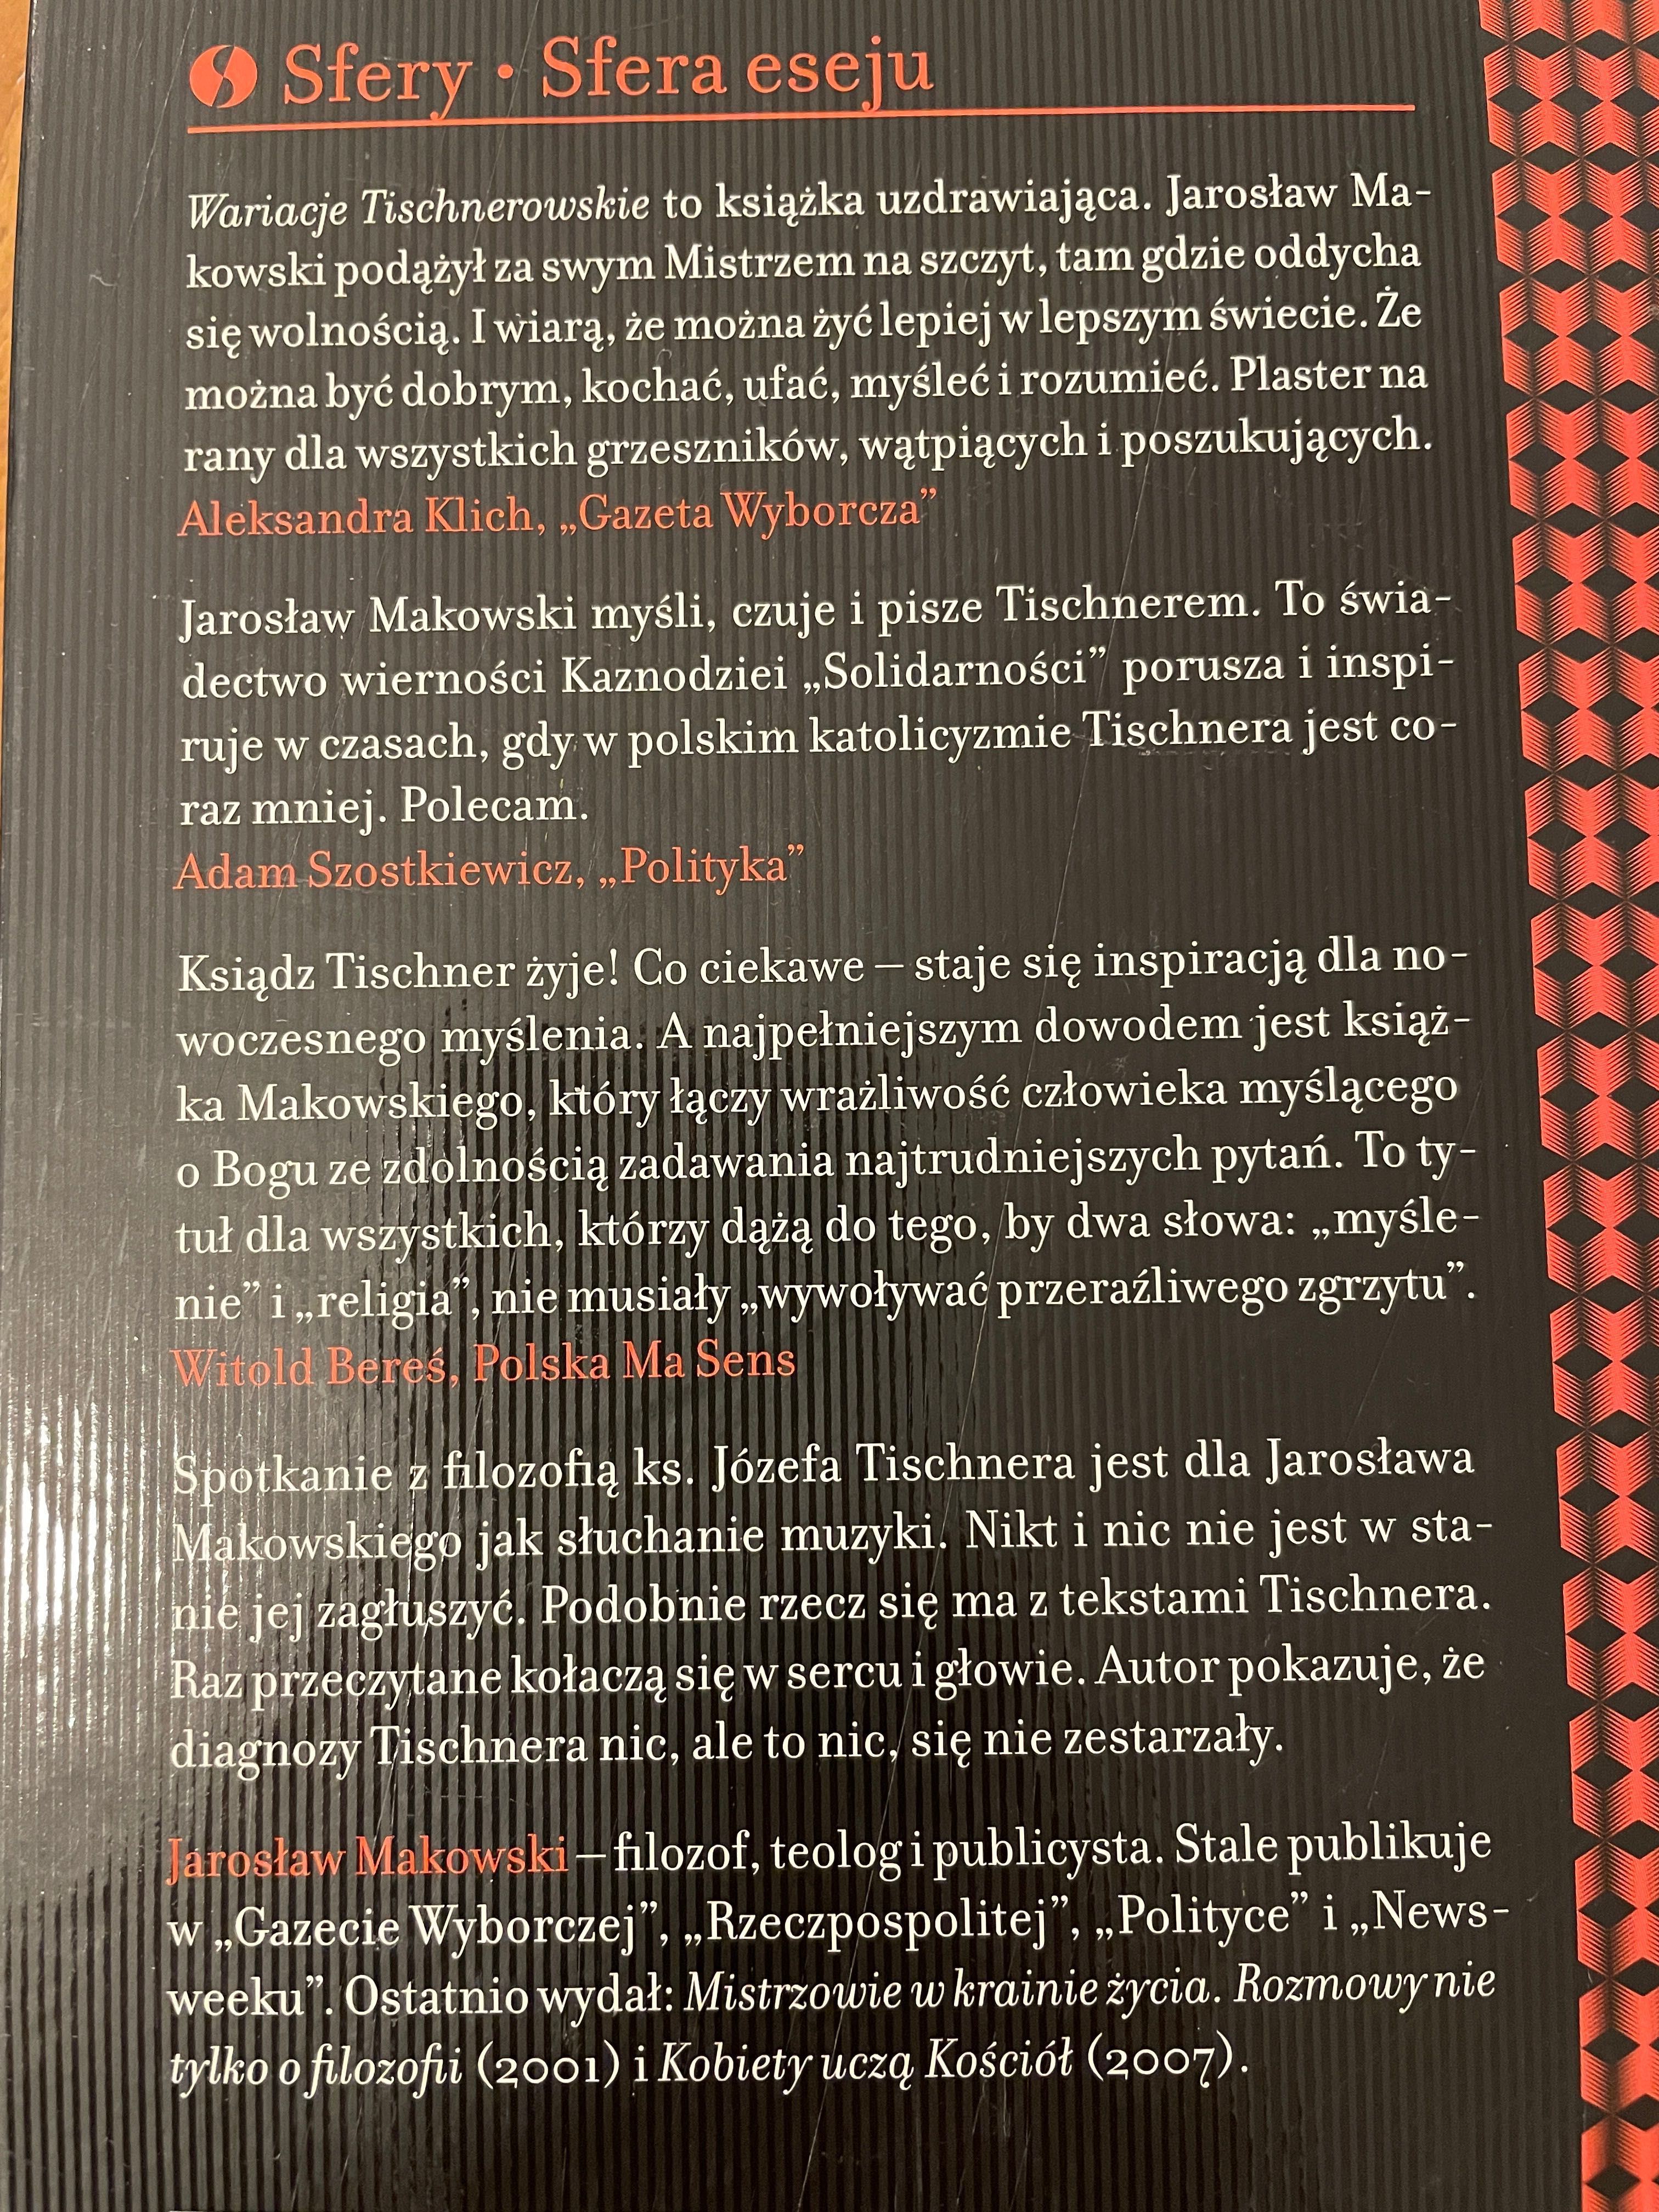 Makowski Jarosław. Wariacje Tischnerowskie